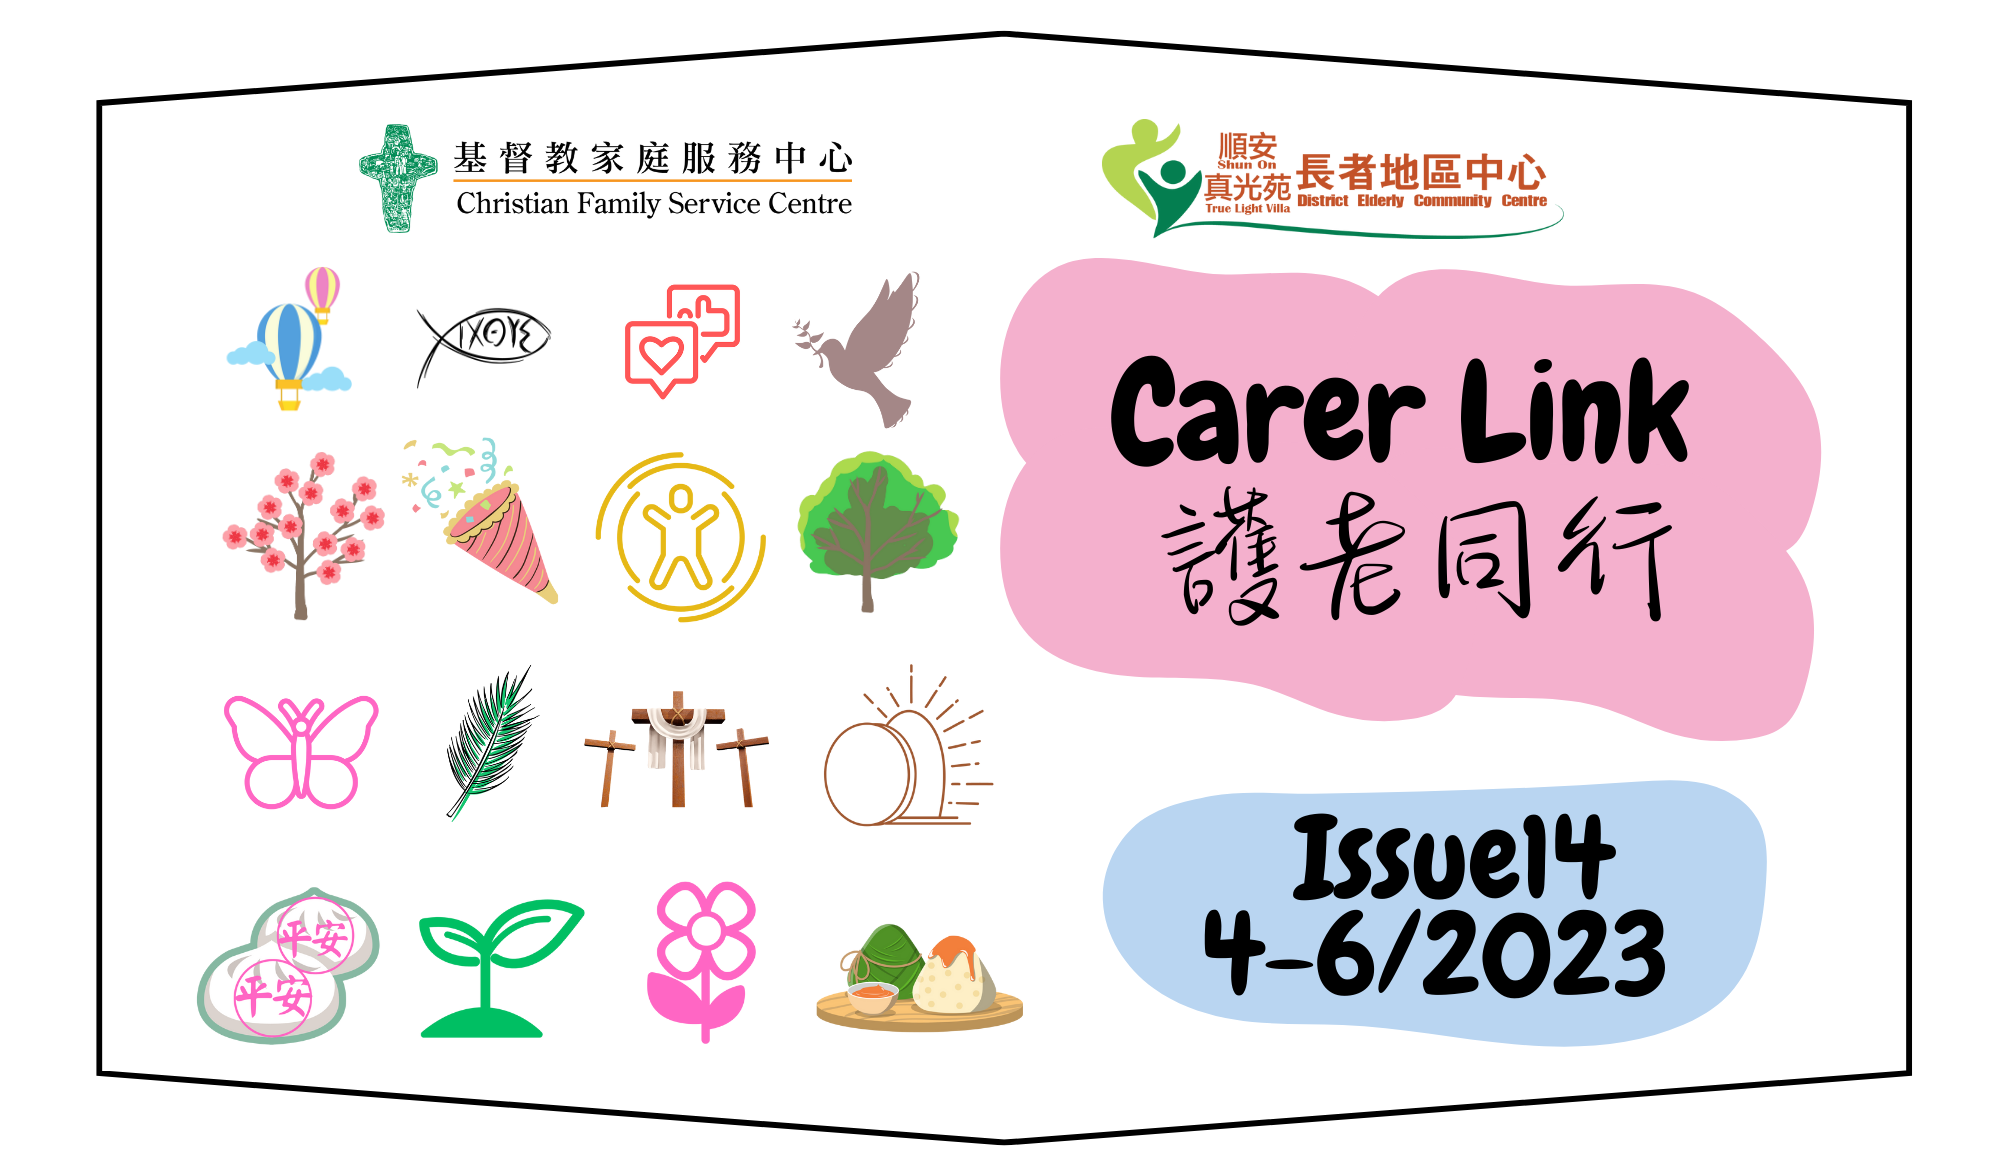 最新一期 Carer Link 照護同行通訊 現已出版